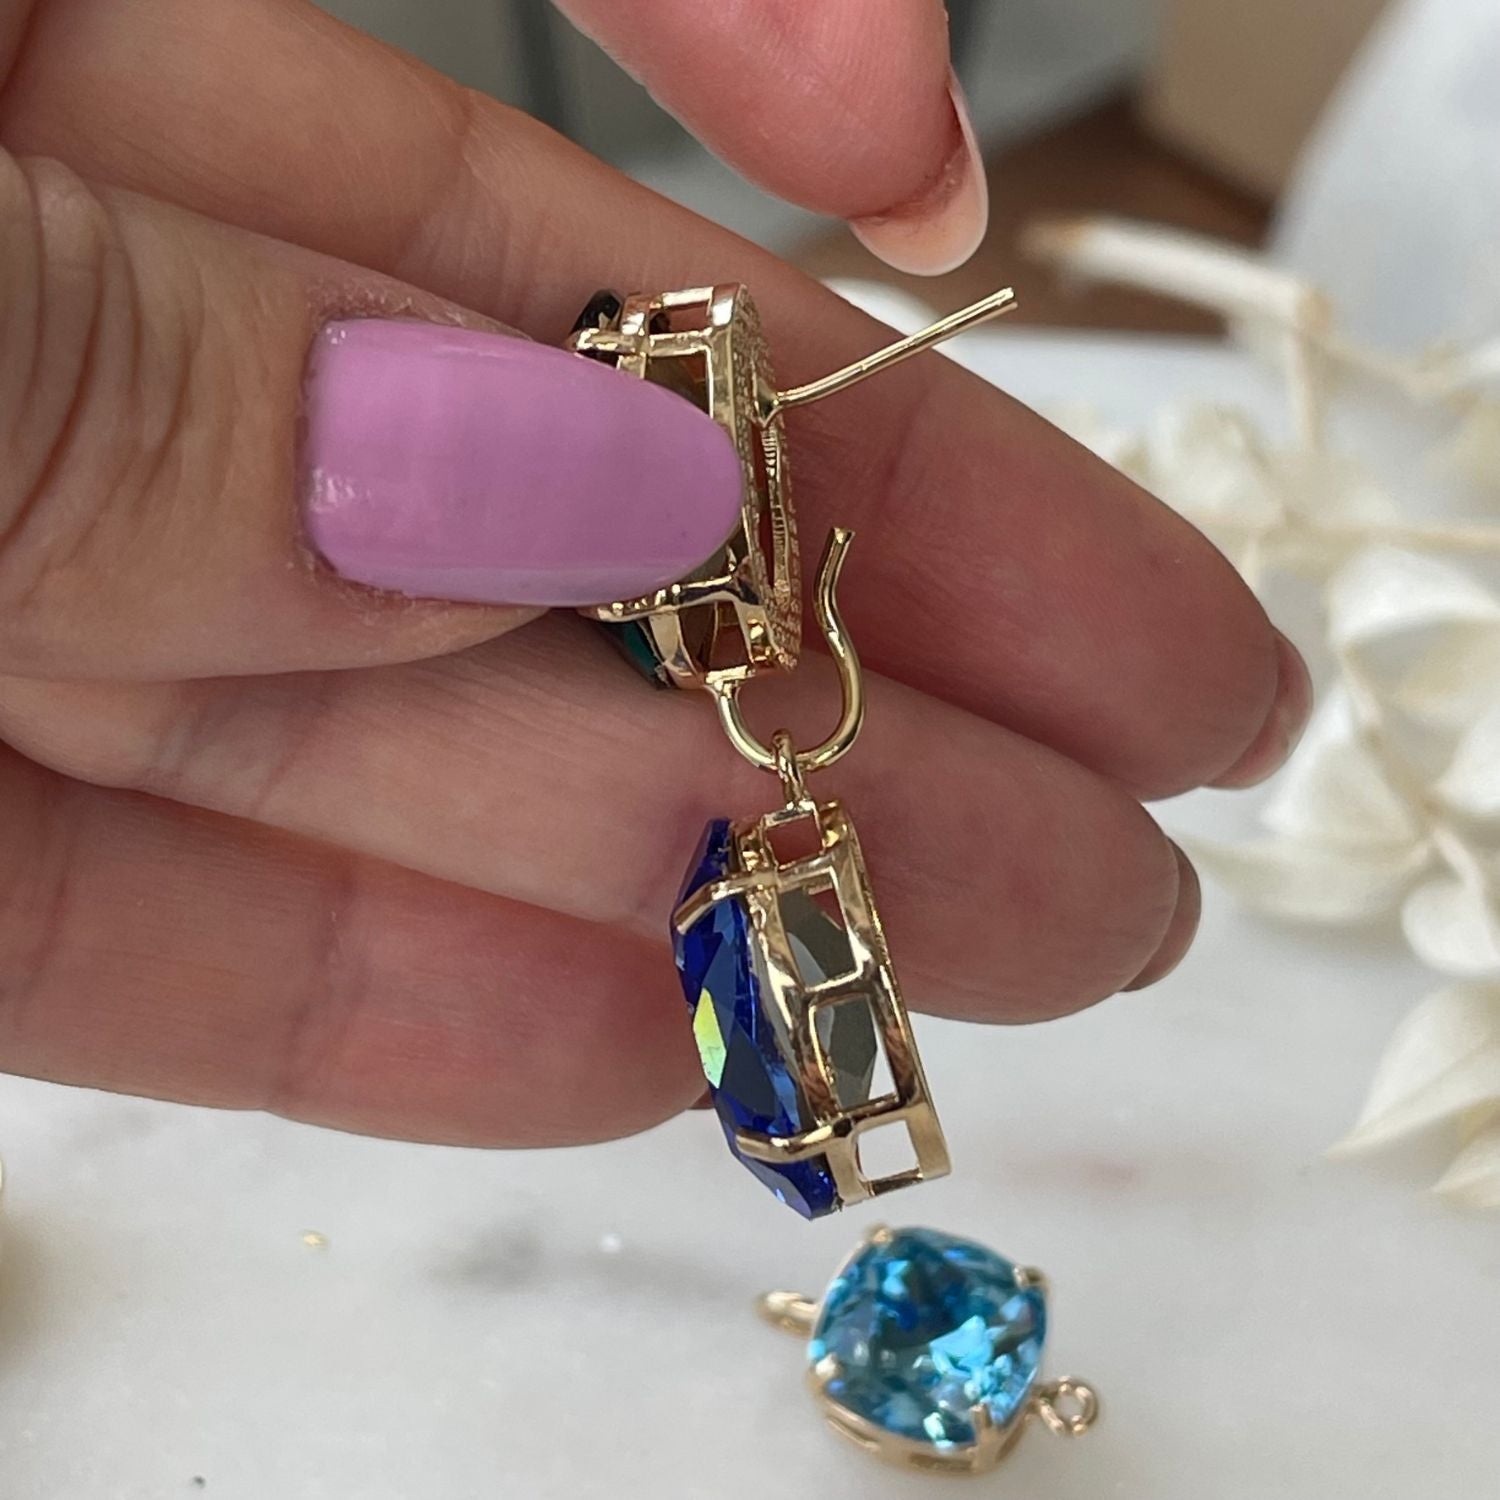 Entdecken Sie die Eleganz der "GLOW" Ohrringe mit blauen Kristallen. Die Basis können separat getragen werden, für einen dezenten Look mit zeitloser Eleganz. Perfekt für jeden Anlass-Alessandra Schmidt Jewelry